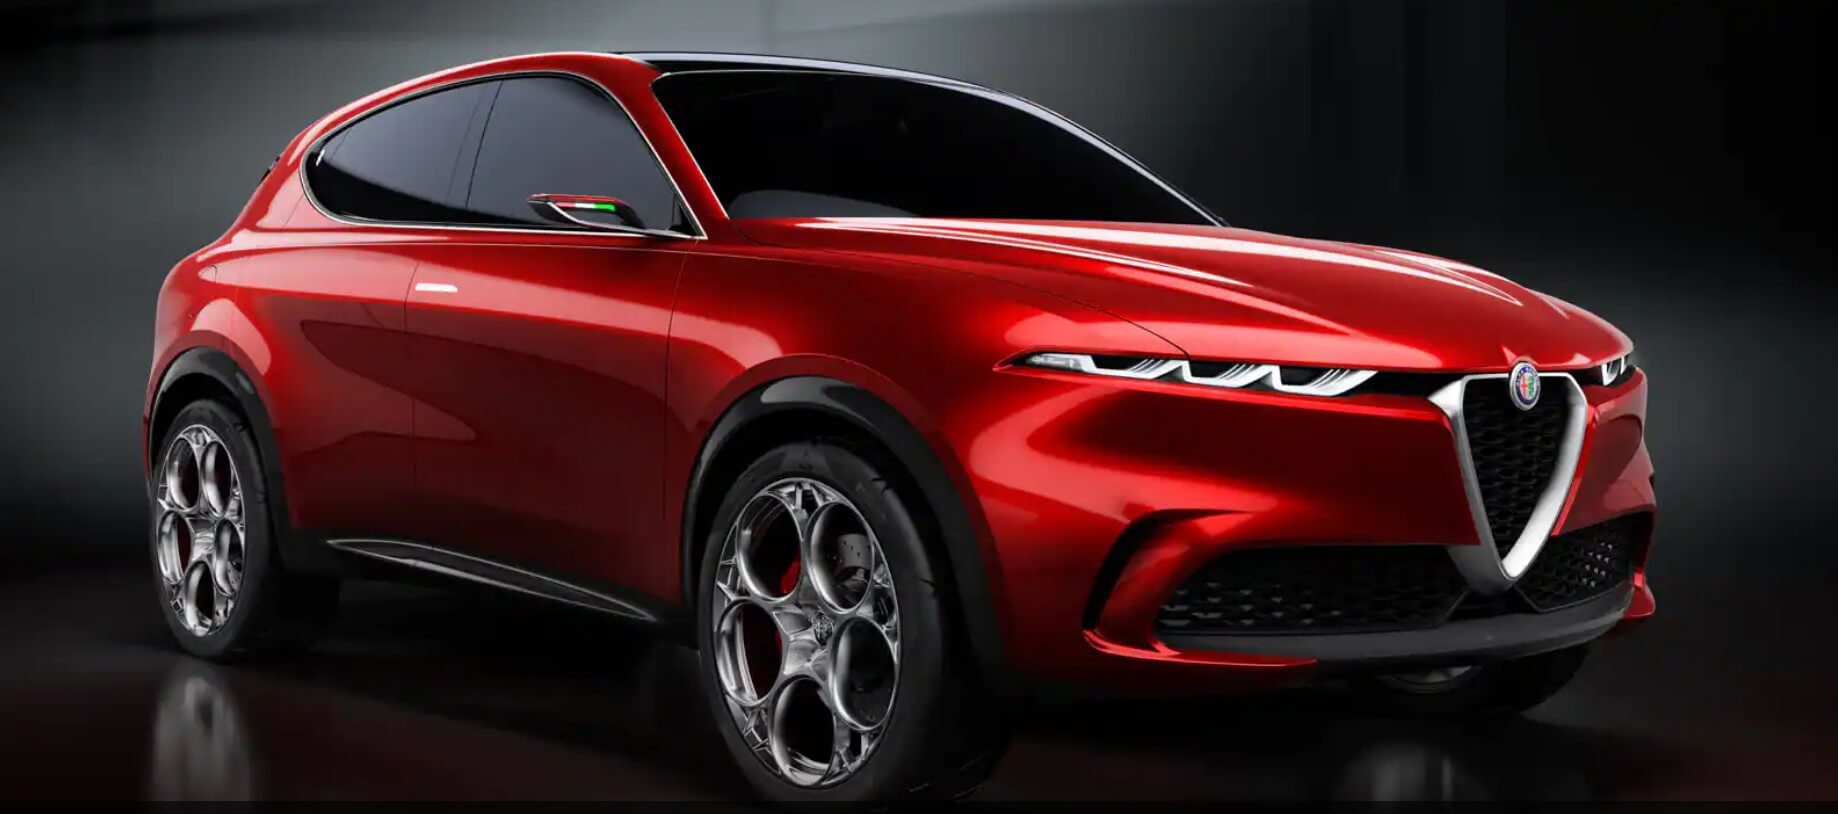 Alfa Romeo plant, einen EV-SUV zu bauen, der mit BMW iX und Mercedes EQS konkurrieren kann